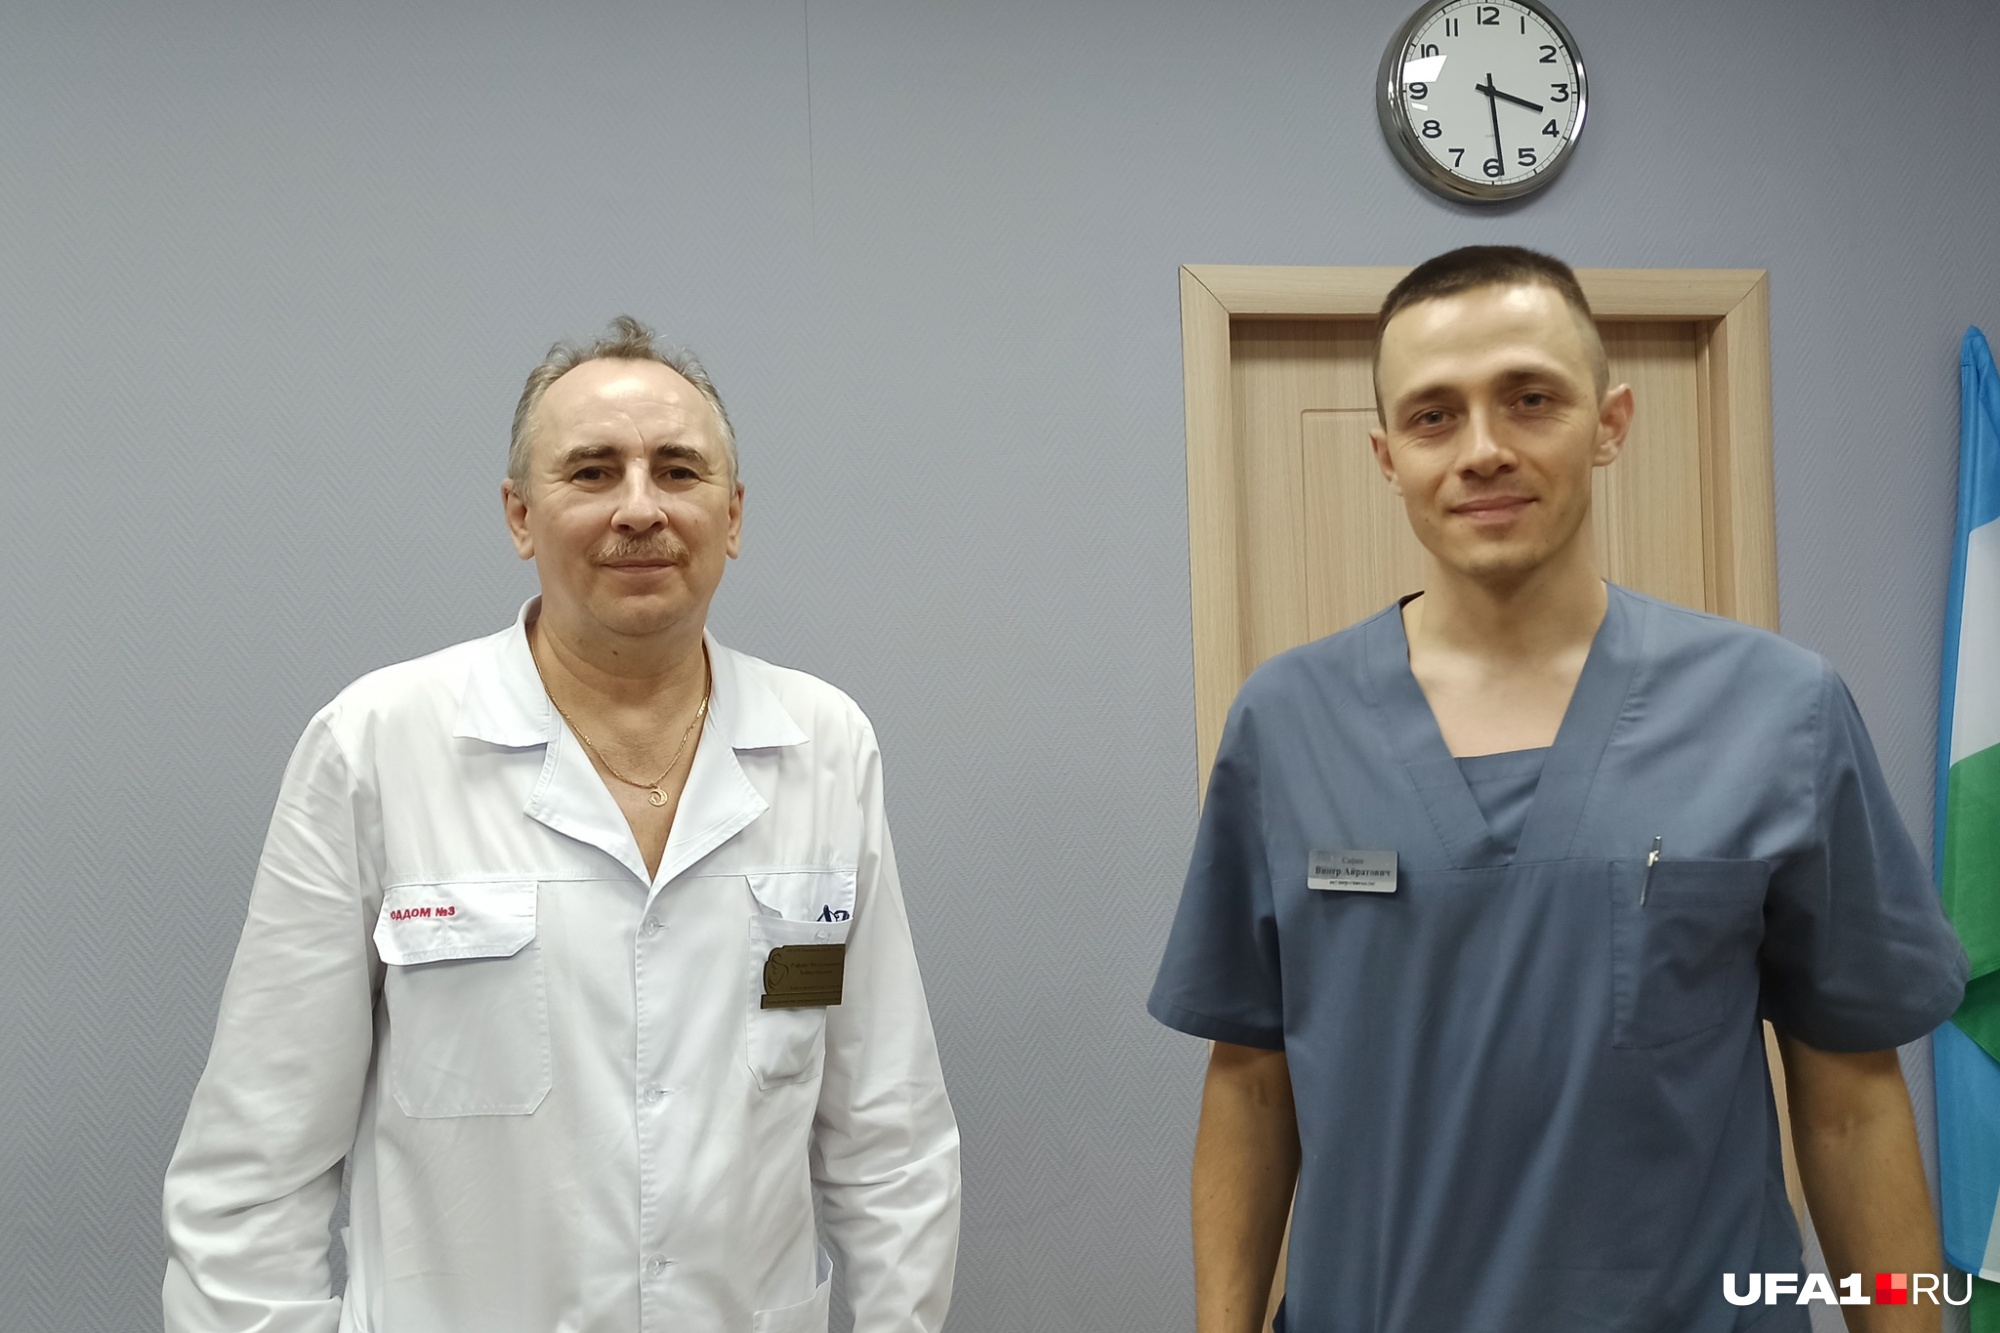 Рафаил (слева) и Винер (справа) — уфимские акушеры-гинекологи